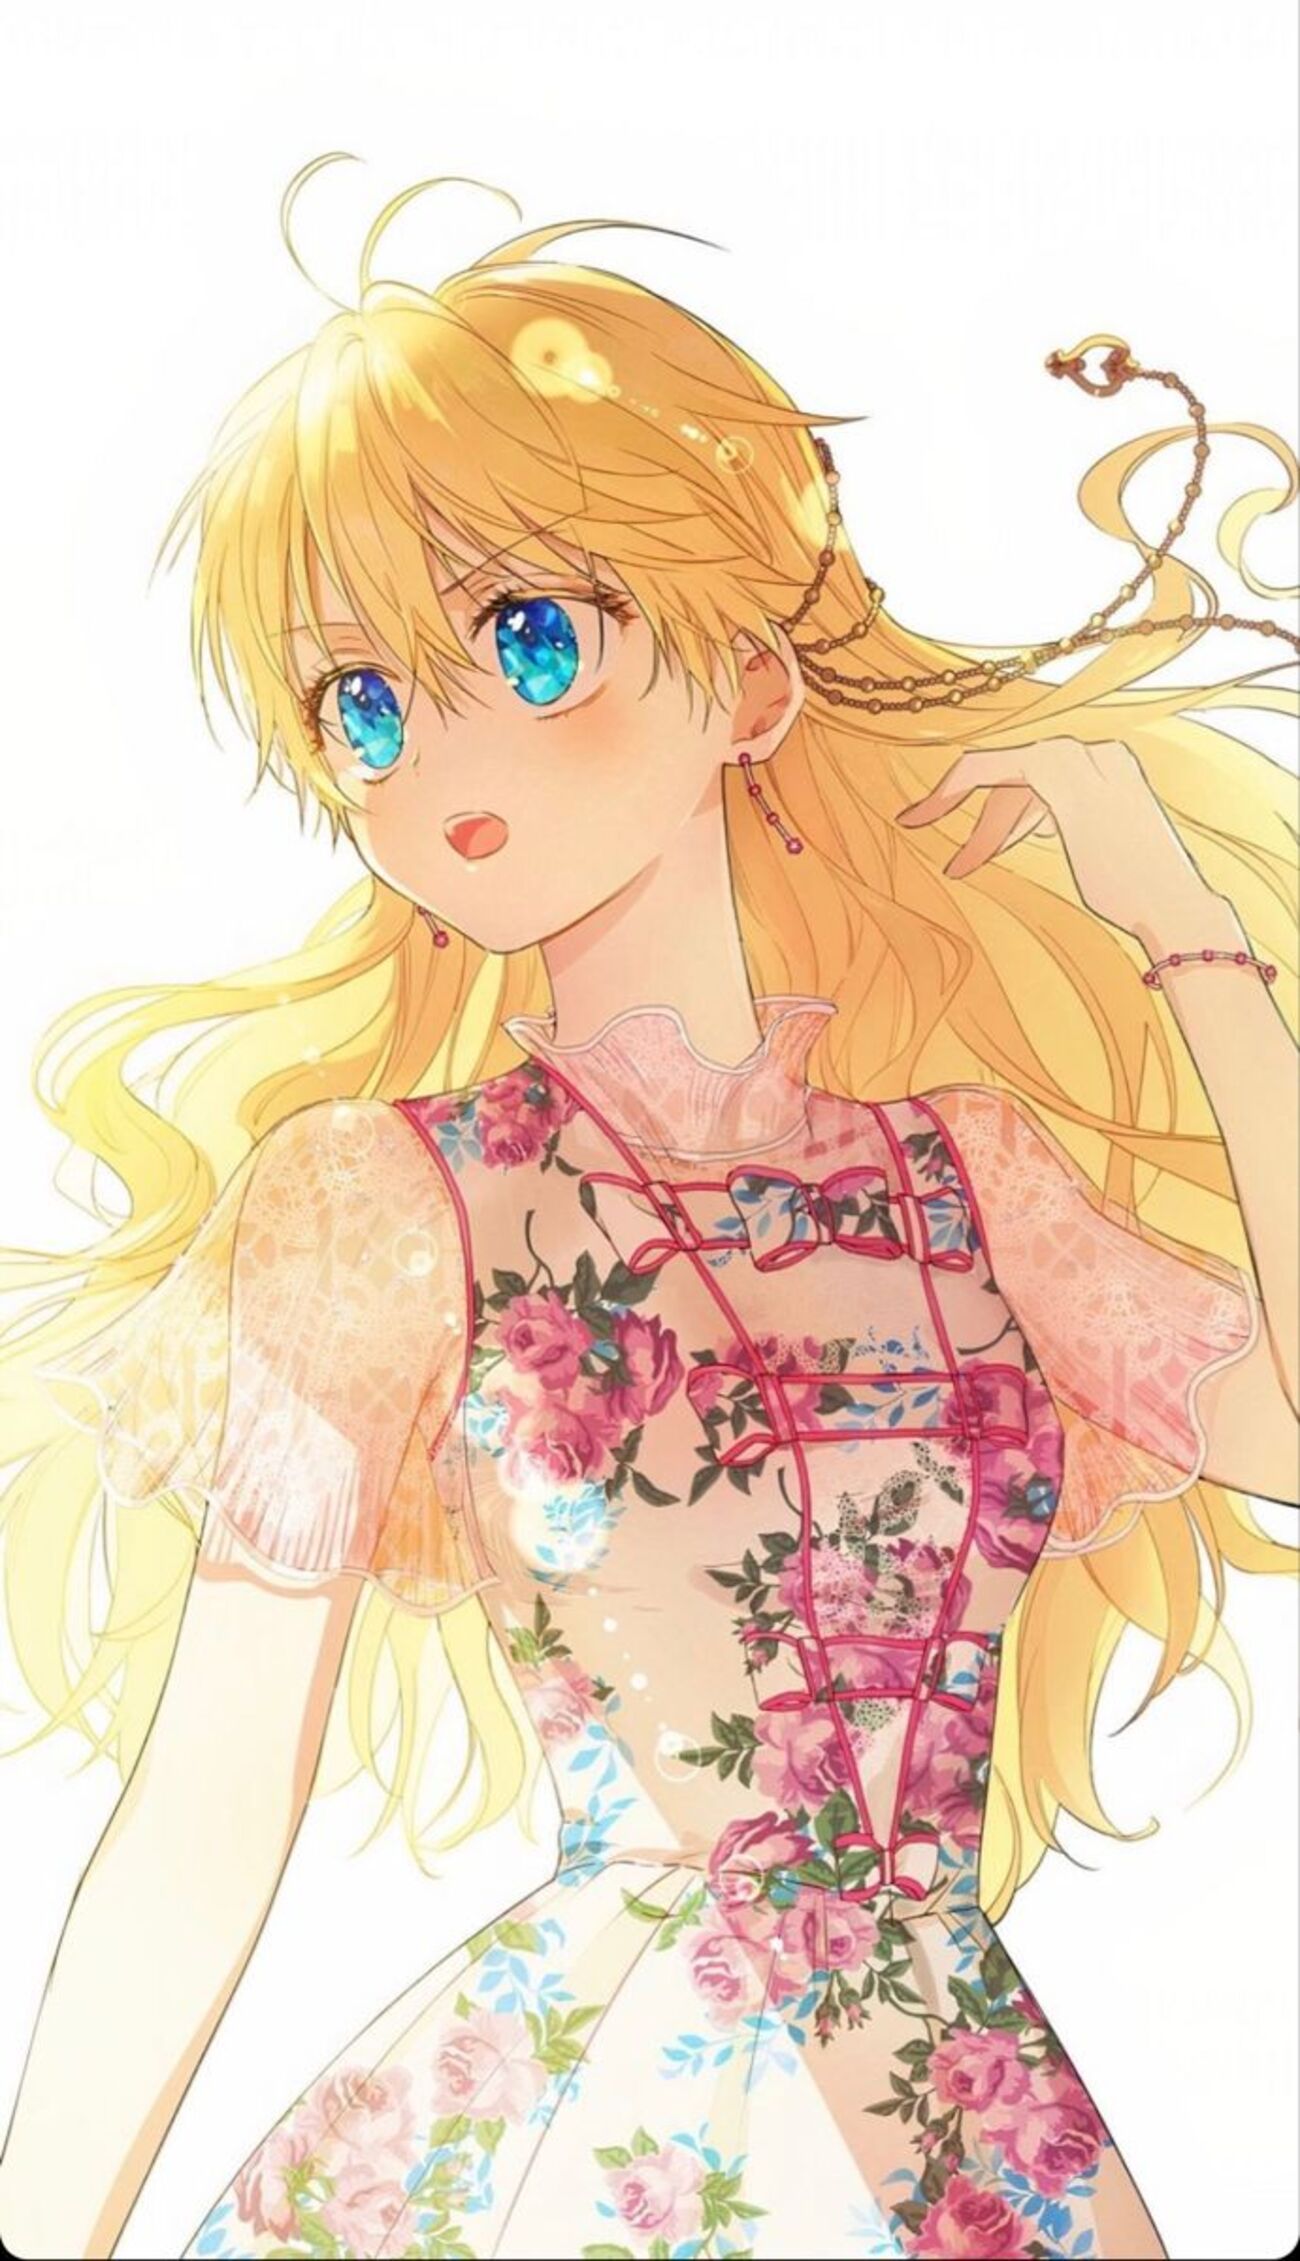 Hãy cùng chiêm ngưỡng hình ảnh Anime của một cô nàng tóc vàng xinh đẹp! Với nụ cười tươi tắn, đôi mắt to tròn và mái tóc vàng óng ánh, cô gây ấn tượng mạnh với bất kỳ ai nhìn thấy. Hãy đắm mình trong thế giới giải trí đầy màu sắc và cảm hứng với hình ảnh Anime đầy cuốn hút này.